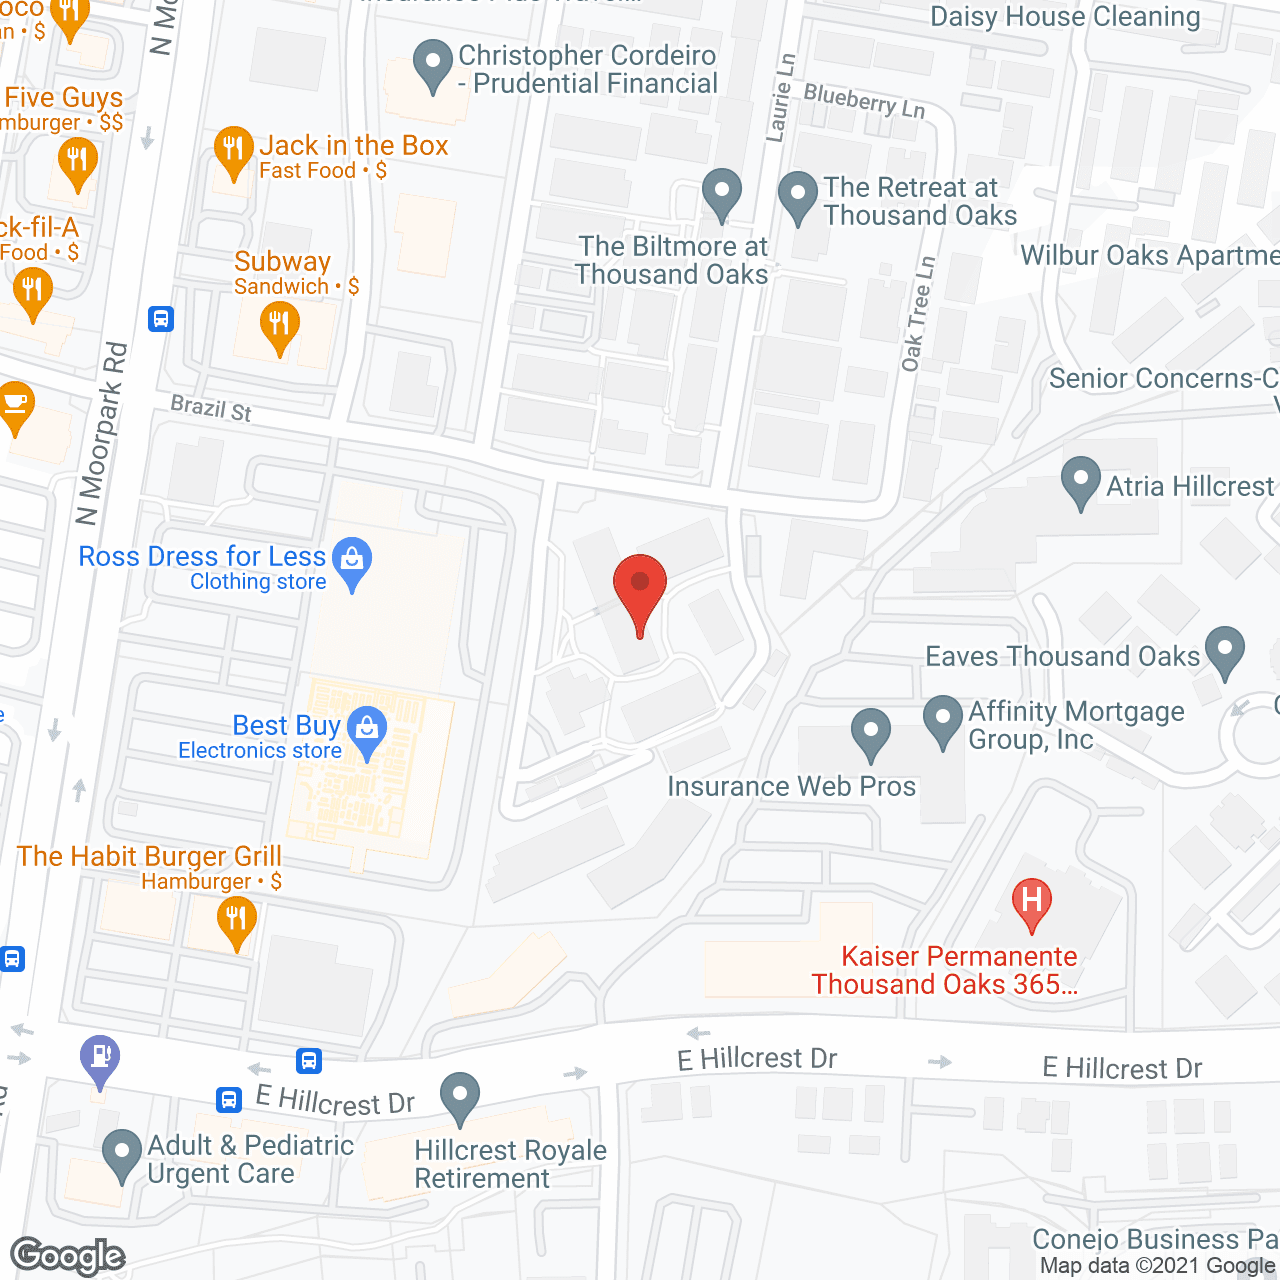 Conejo Future Apartments in google map